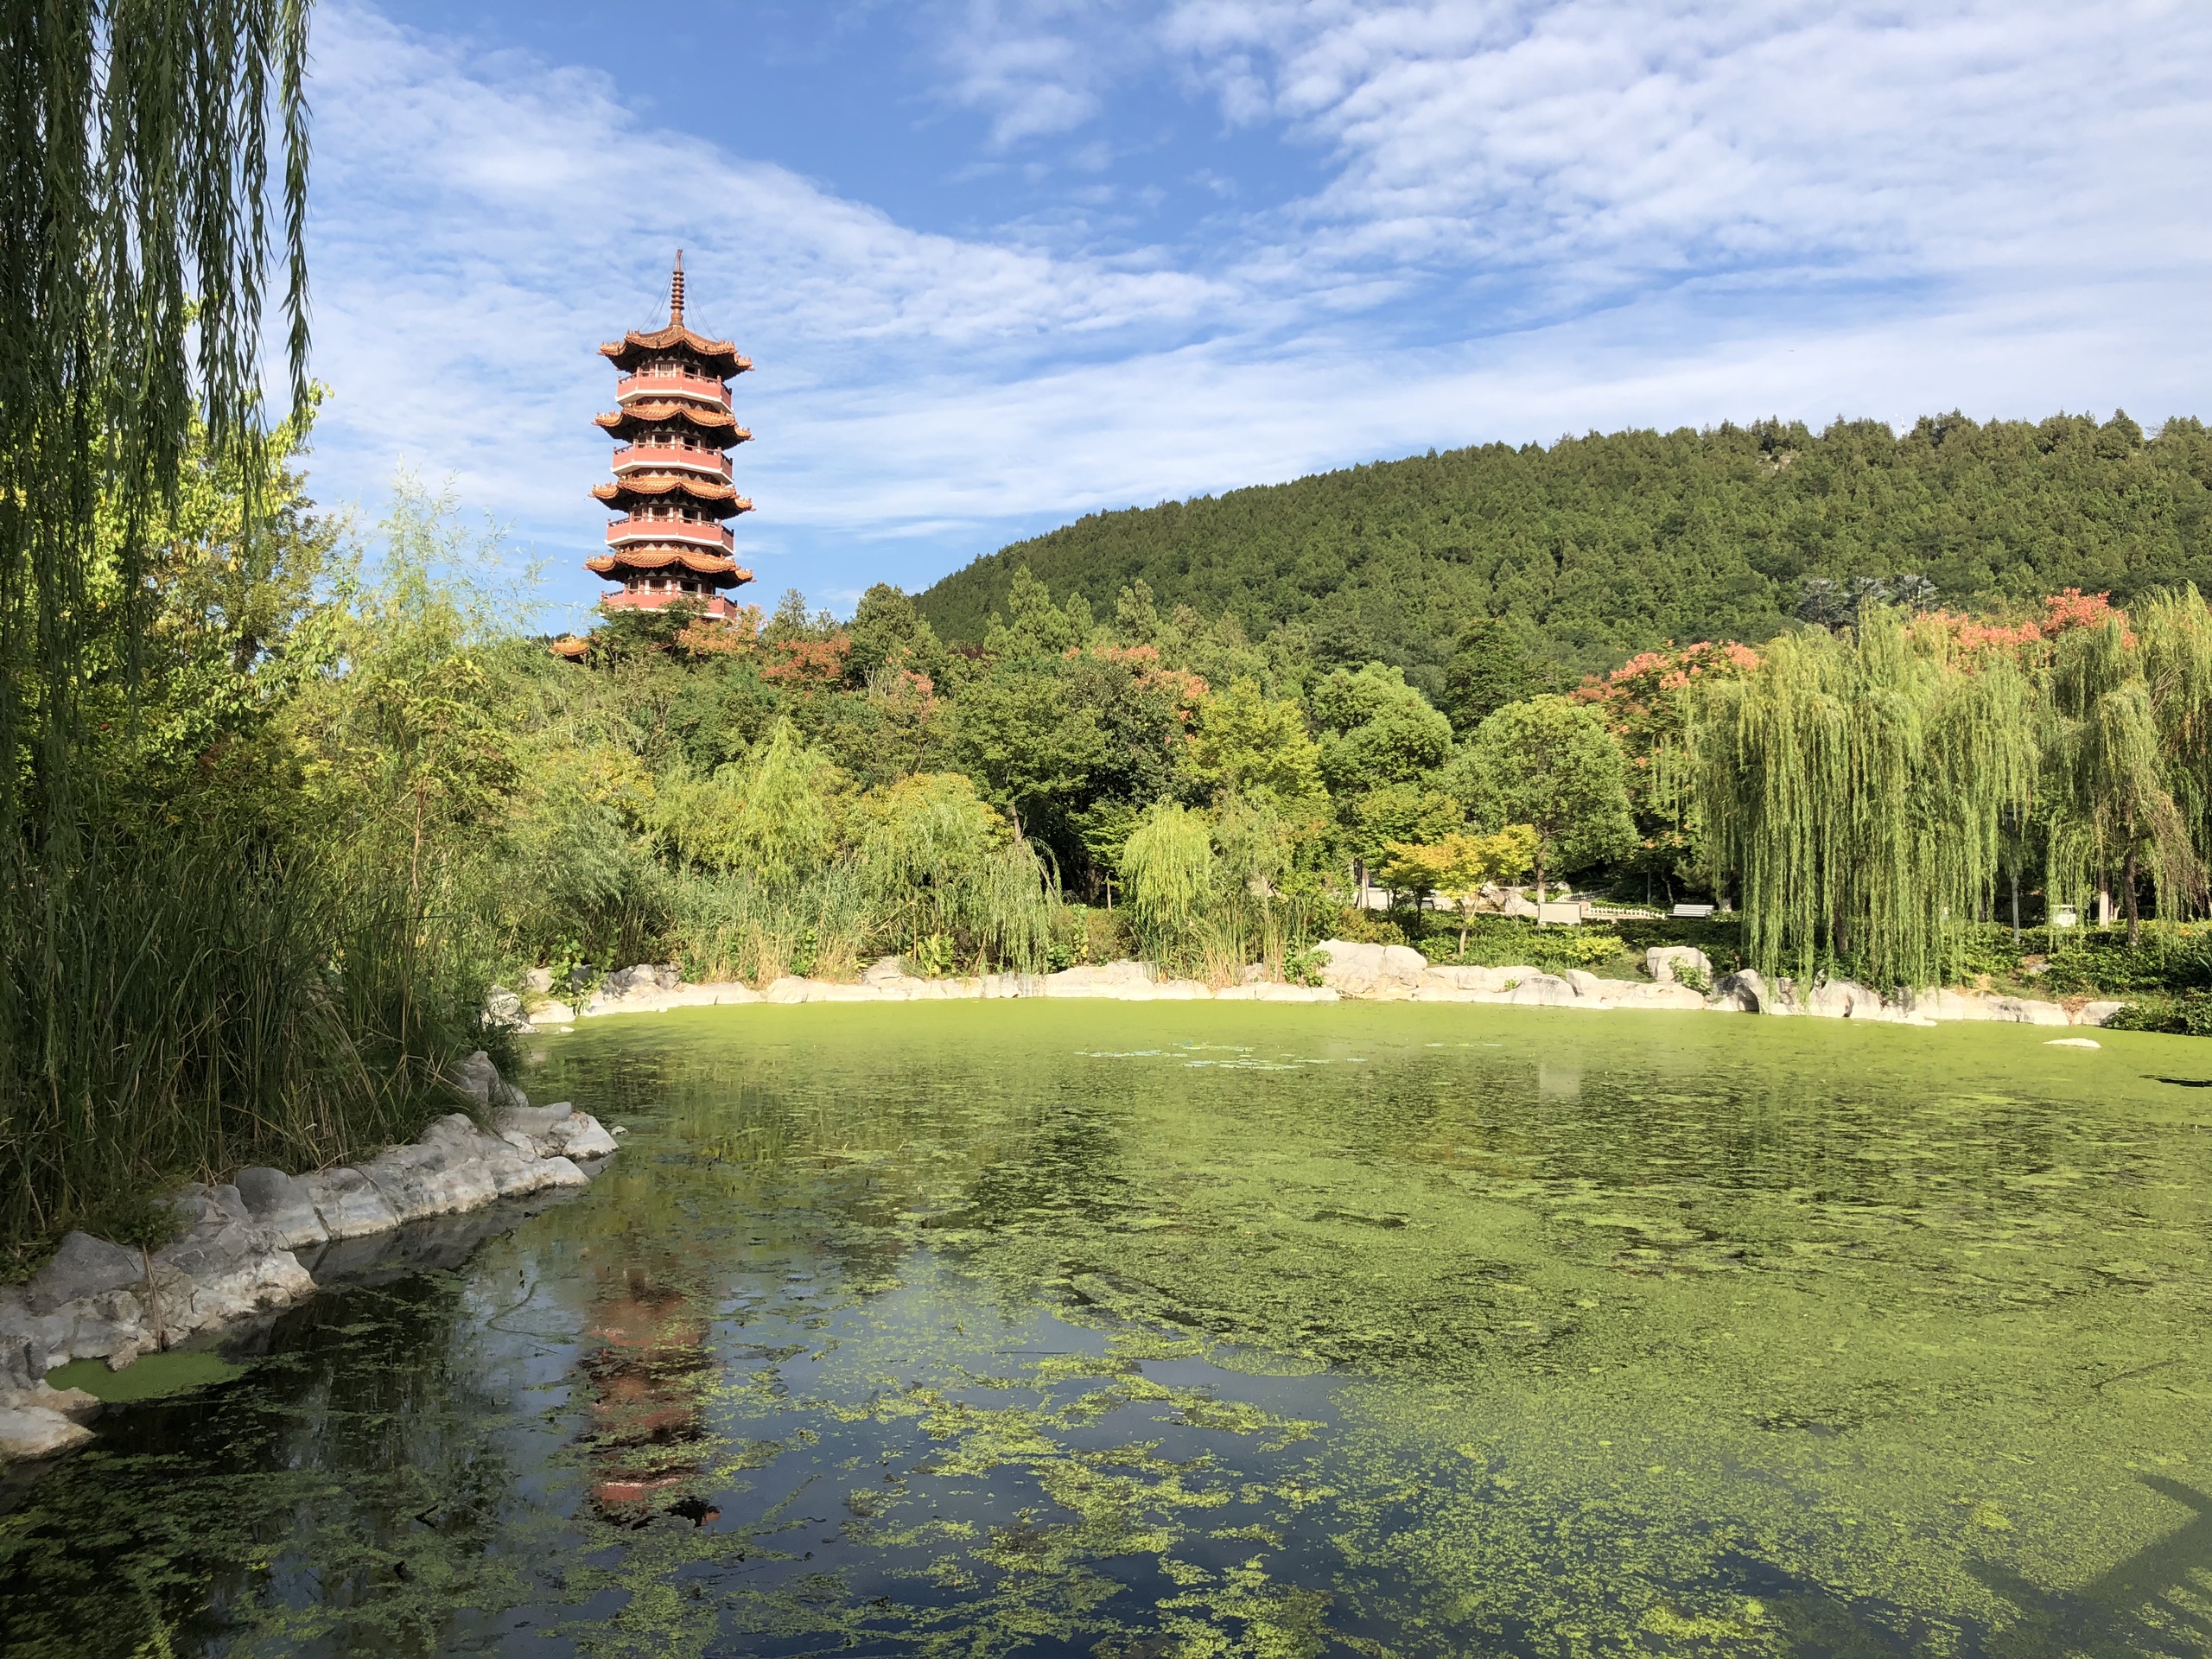 徐州云龙湖旅游景区-一个究极巨型城市公园，这个面积在国内很少有能比的